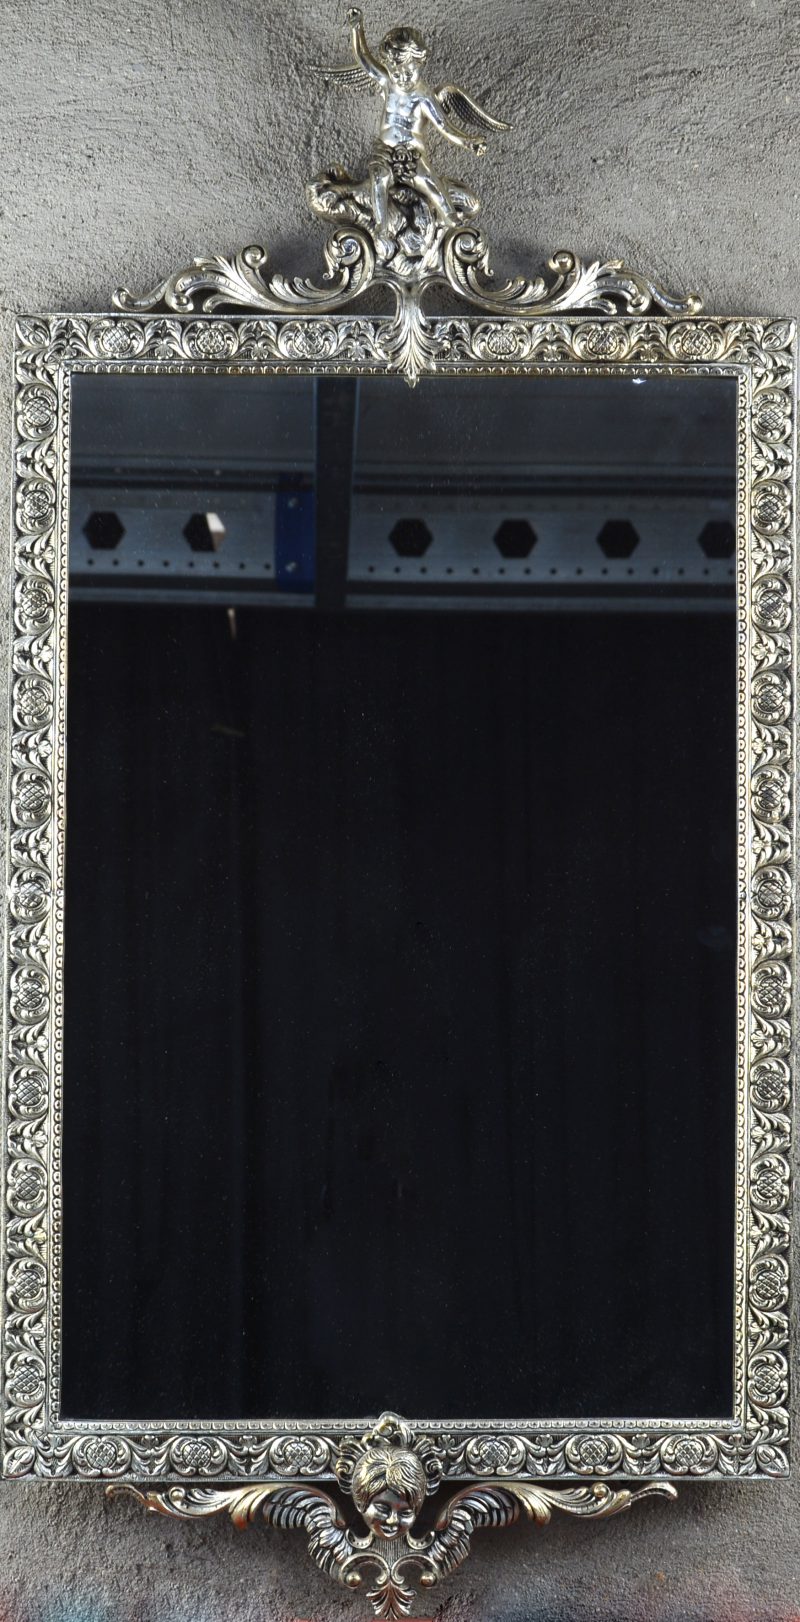 Een spiegel in verzilverd metalen lijst, getooid met een engeltje bovenaan en met engelenkopje onderaan.